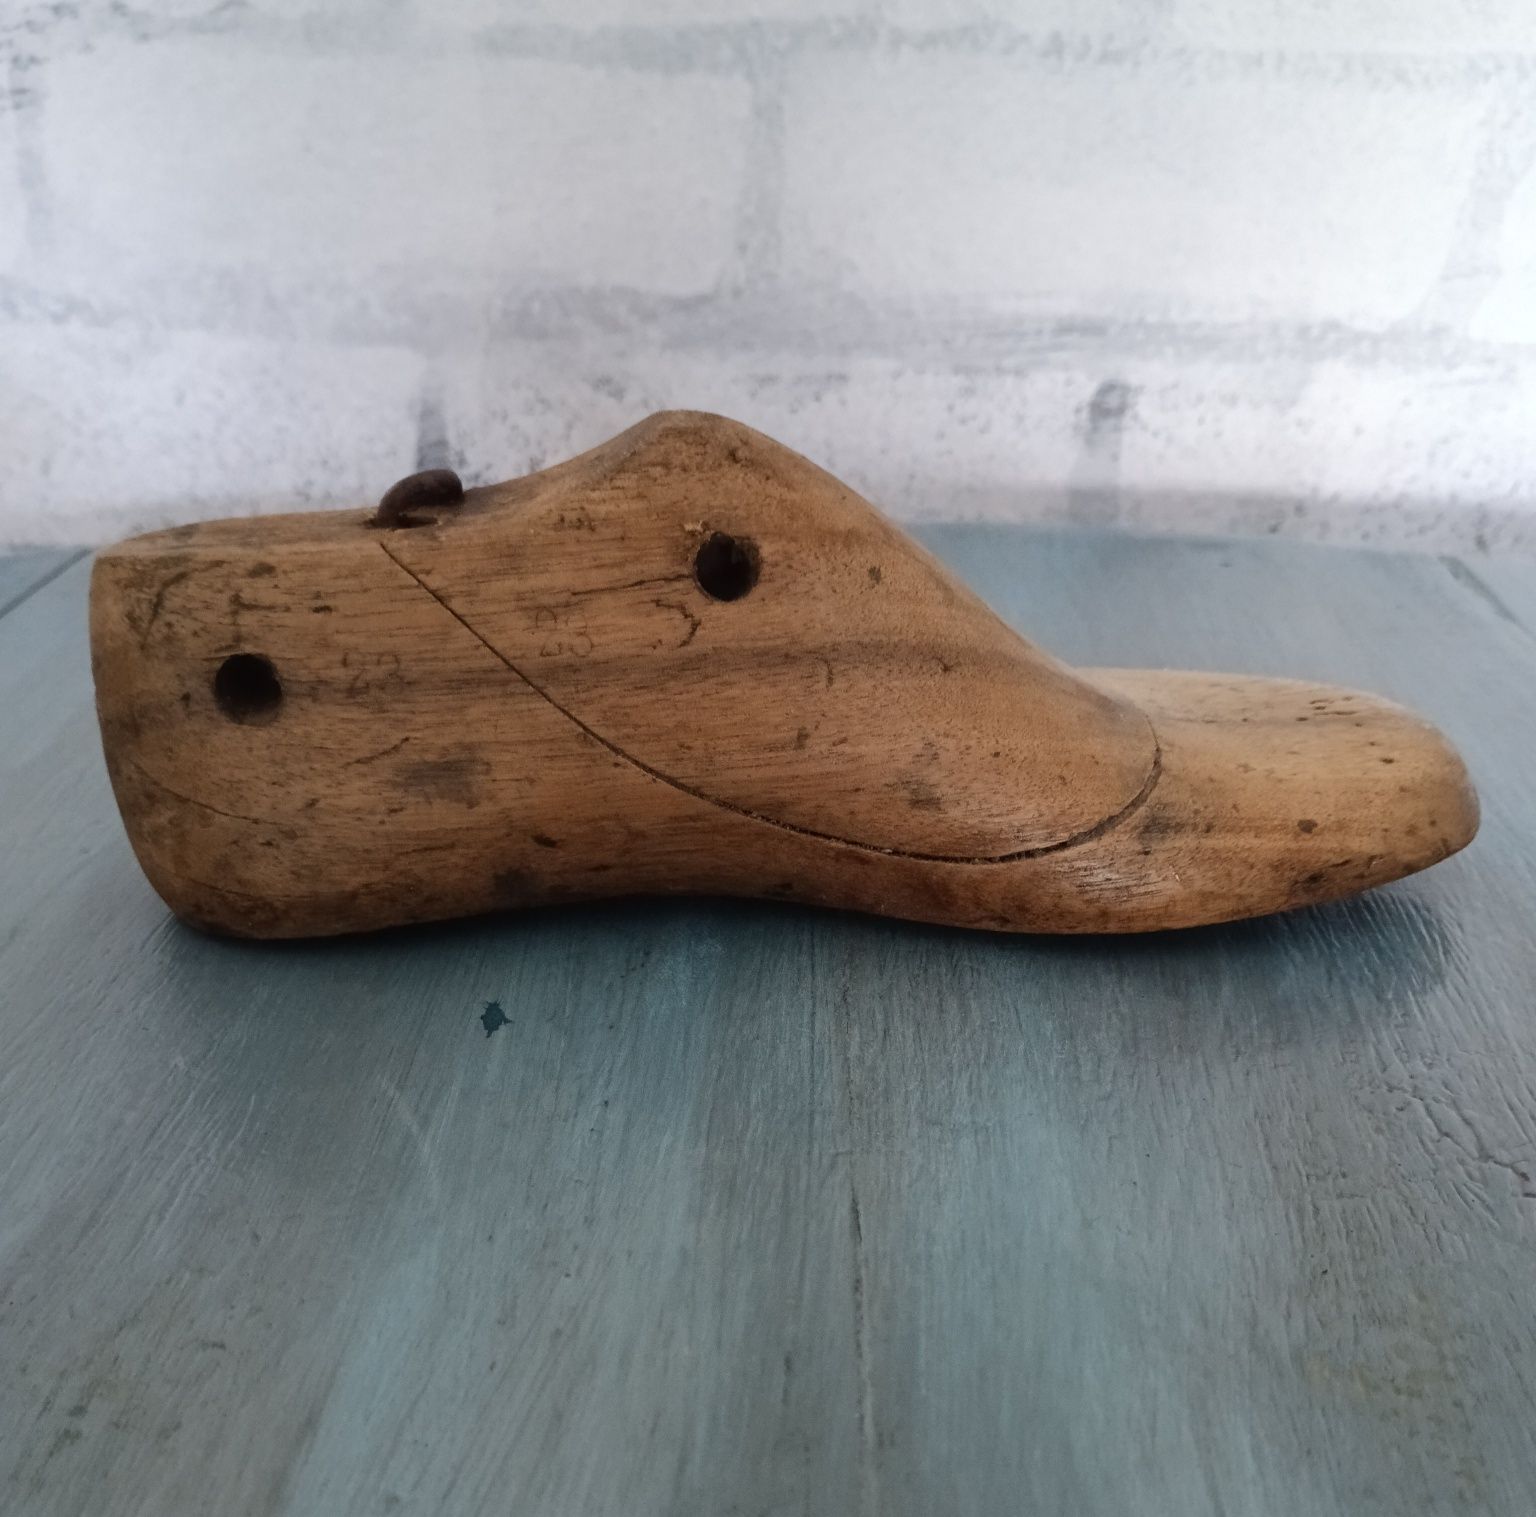 Moldes, formas de sapato antigas